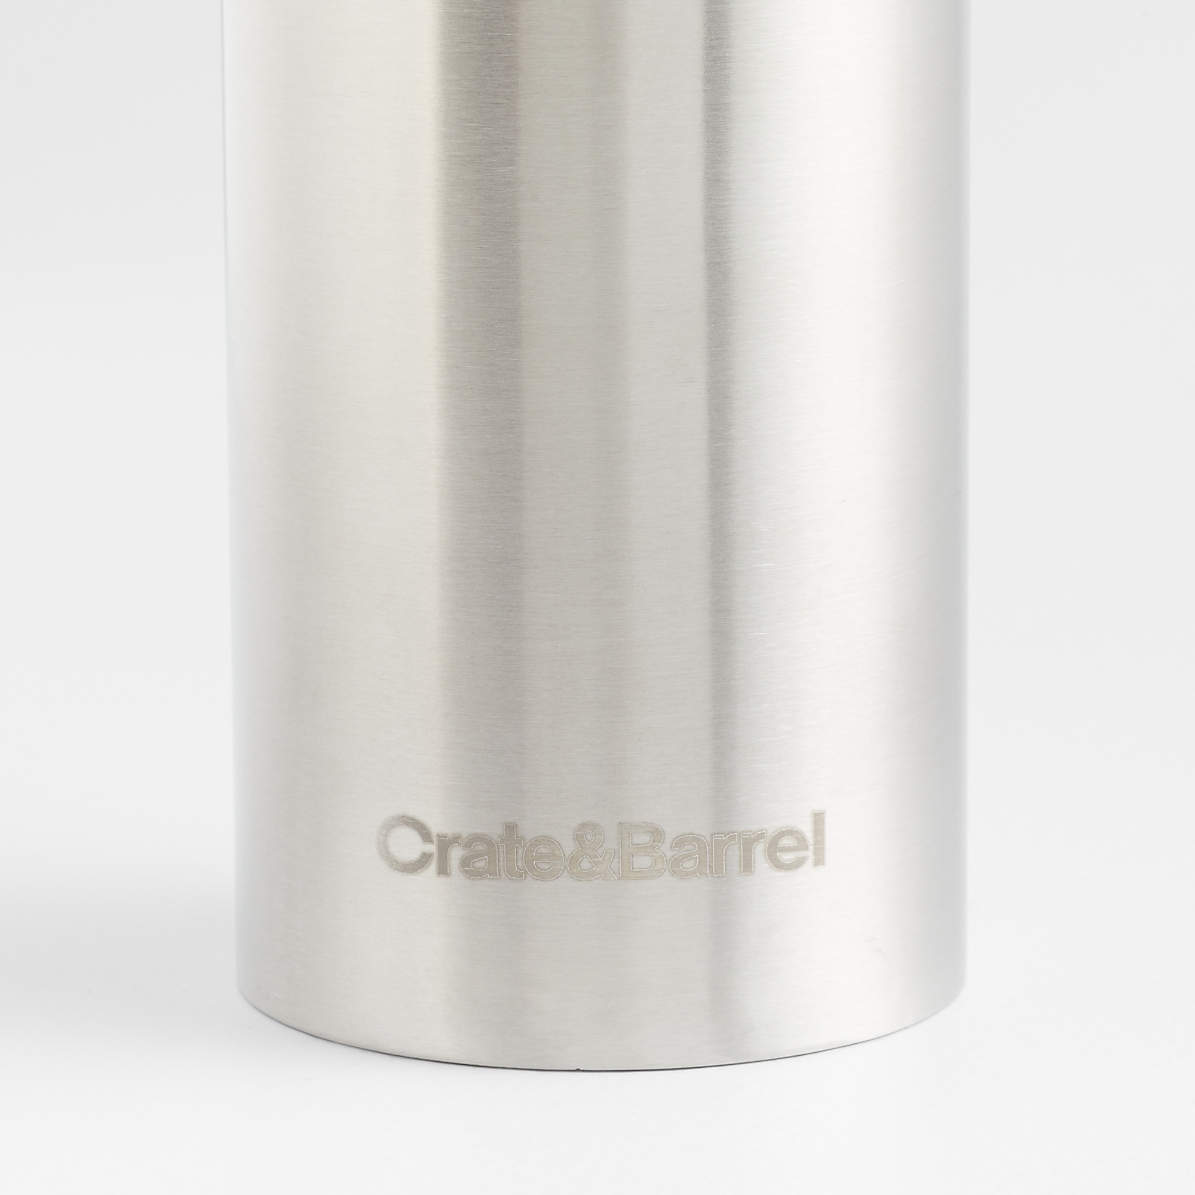 Crate&Barrel OXO ® Salt and Pepper Grinder Set